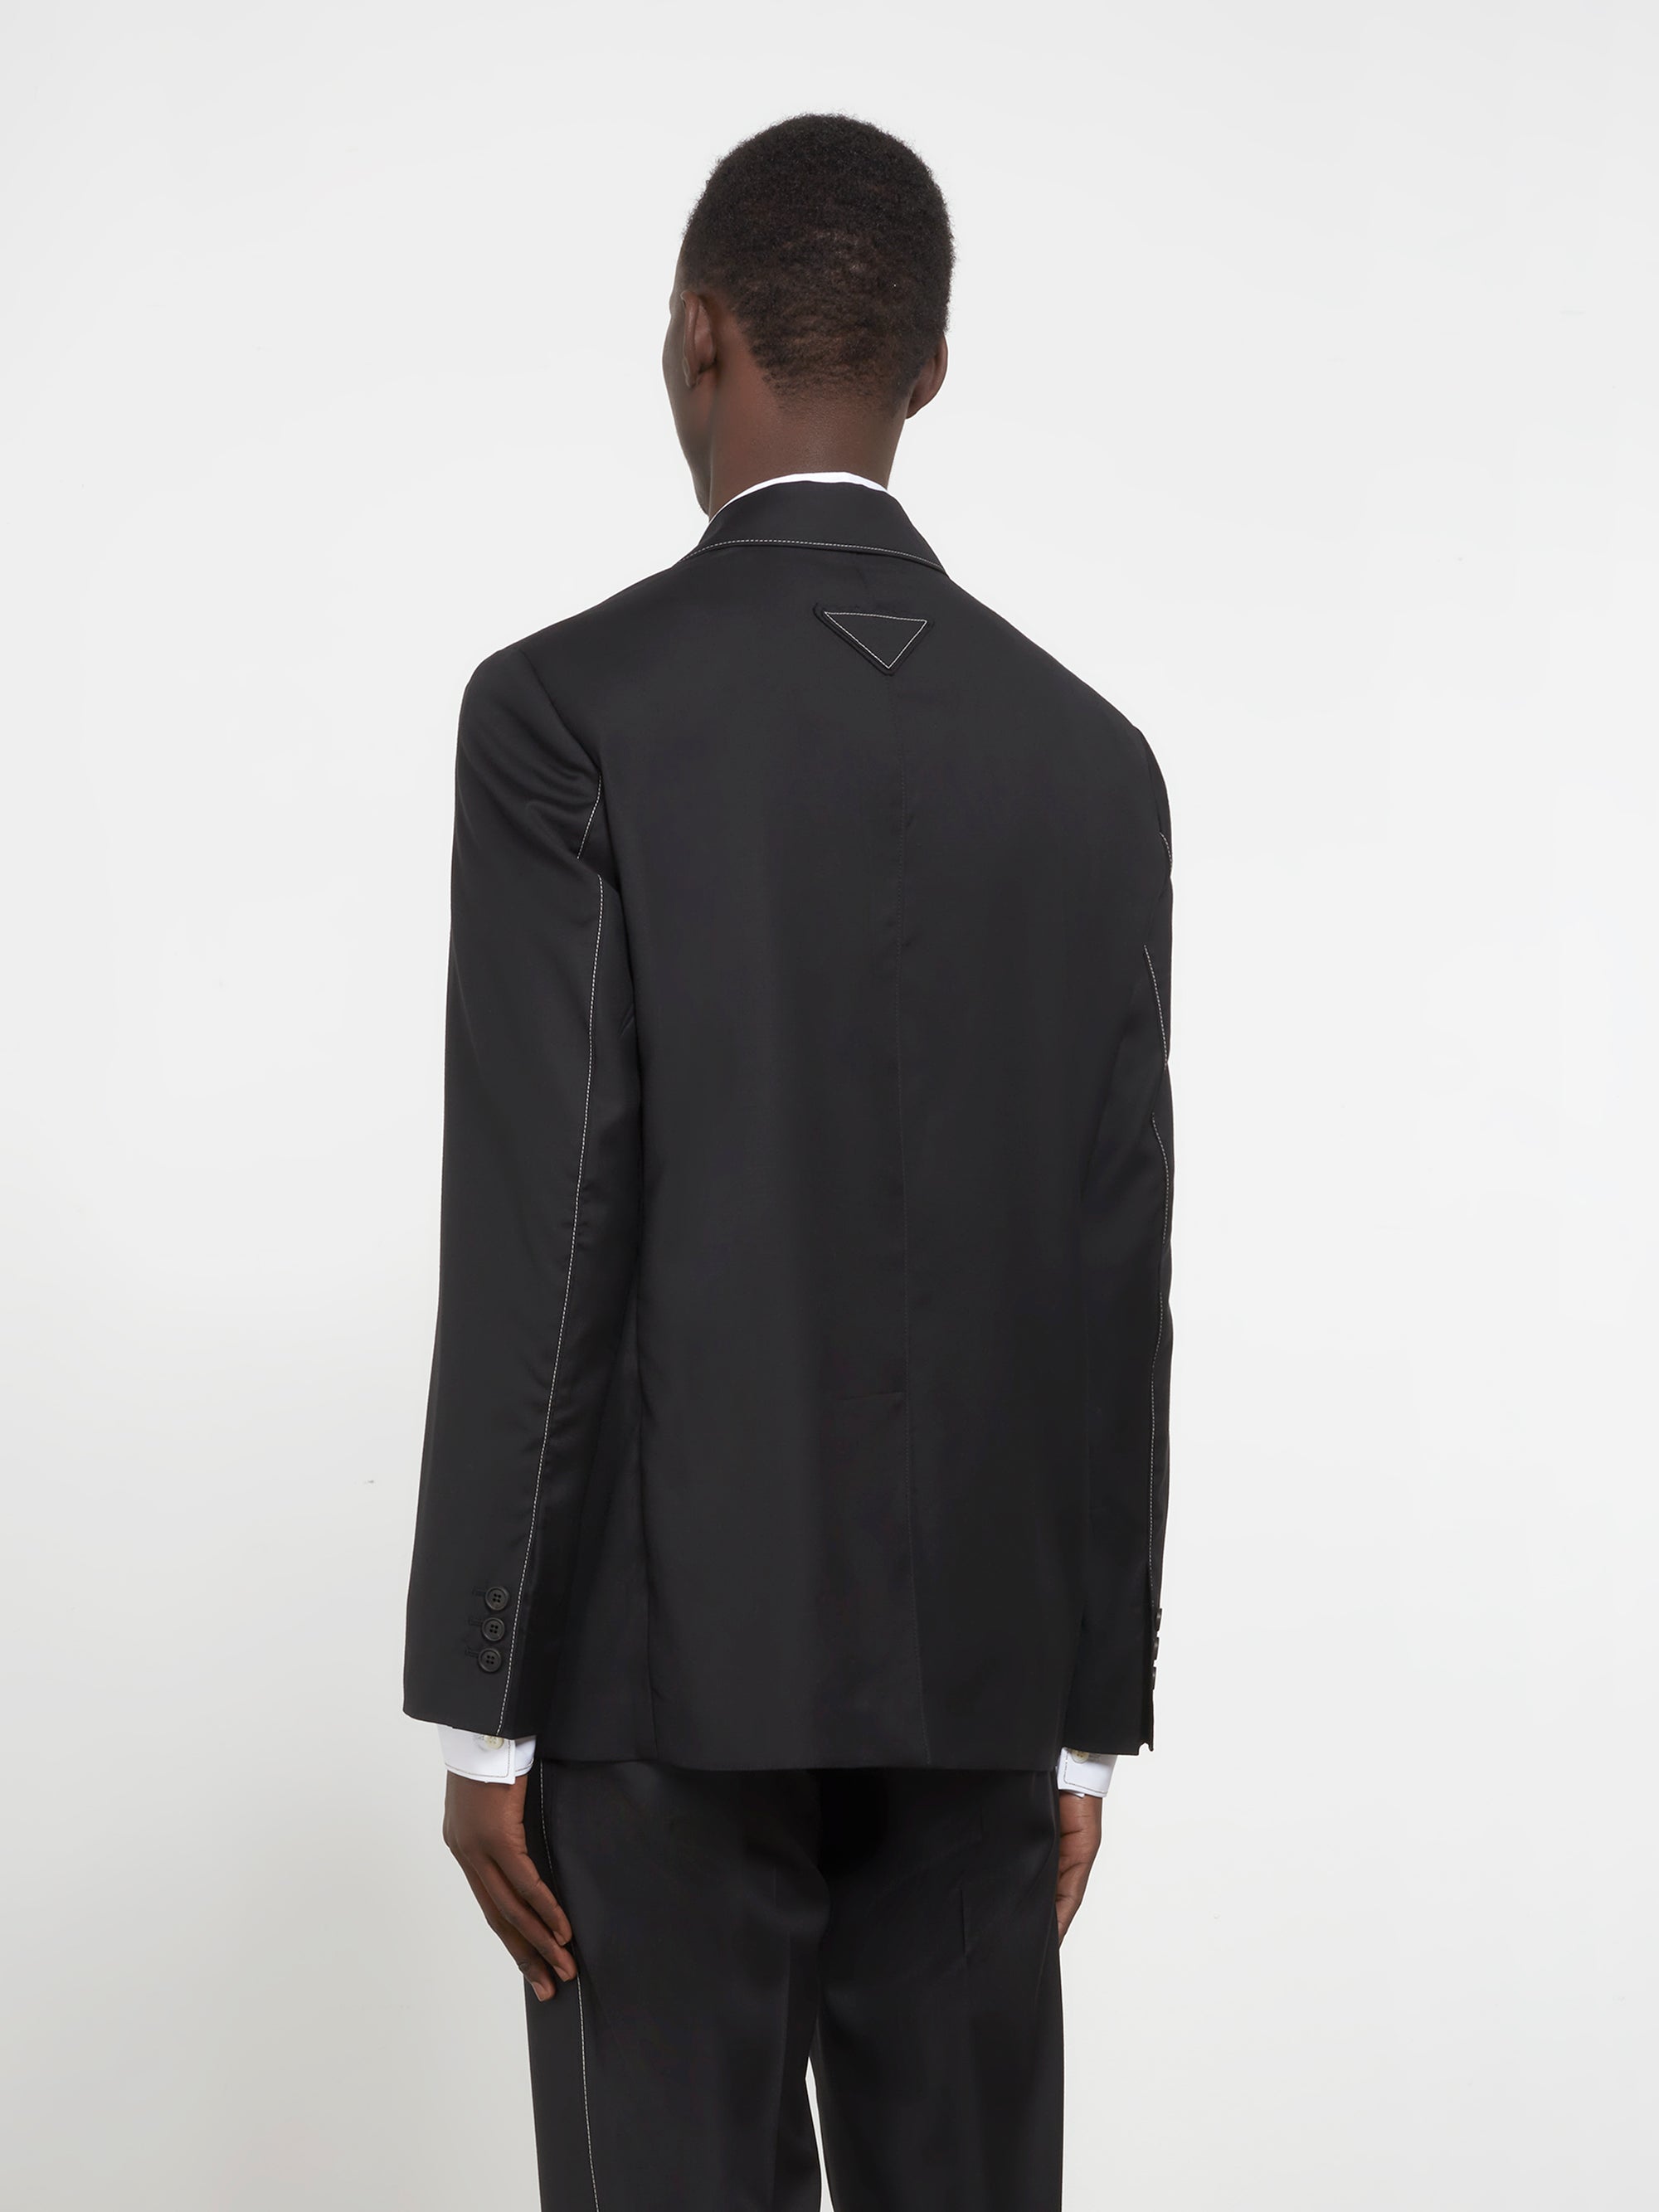 Prada - Men’s Single-Breasted Wool Jacket - (Black) view 3